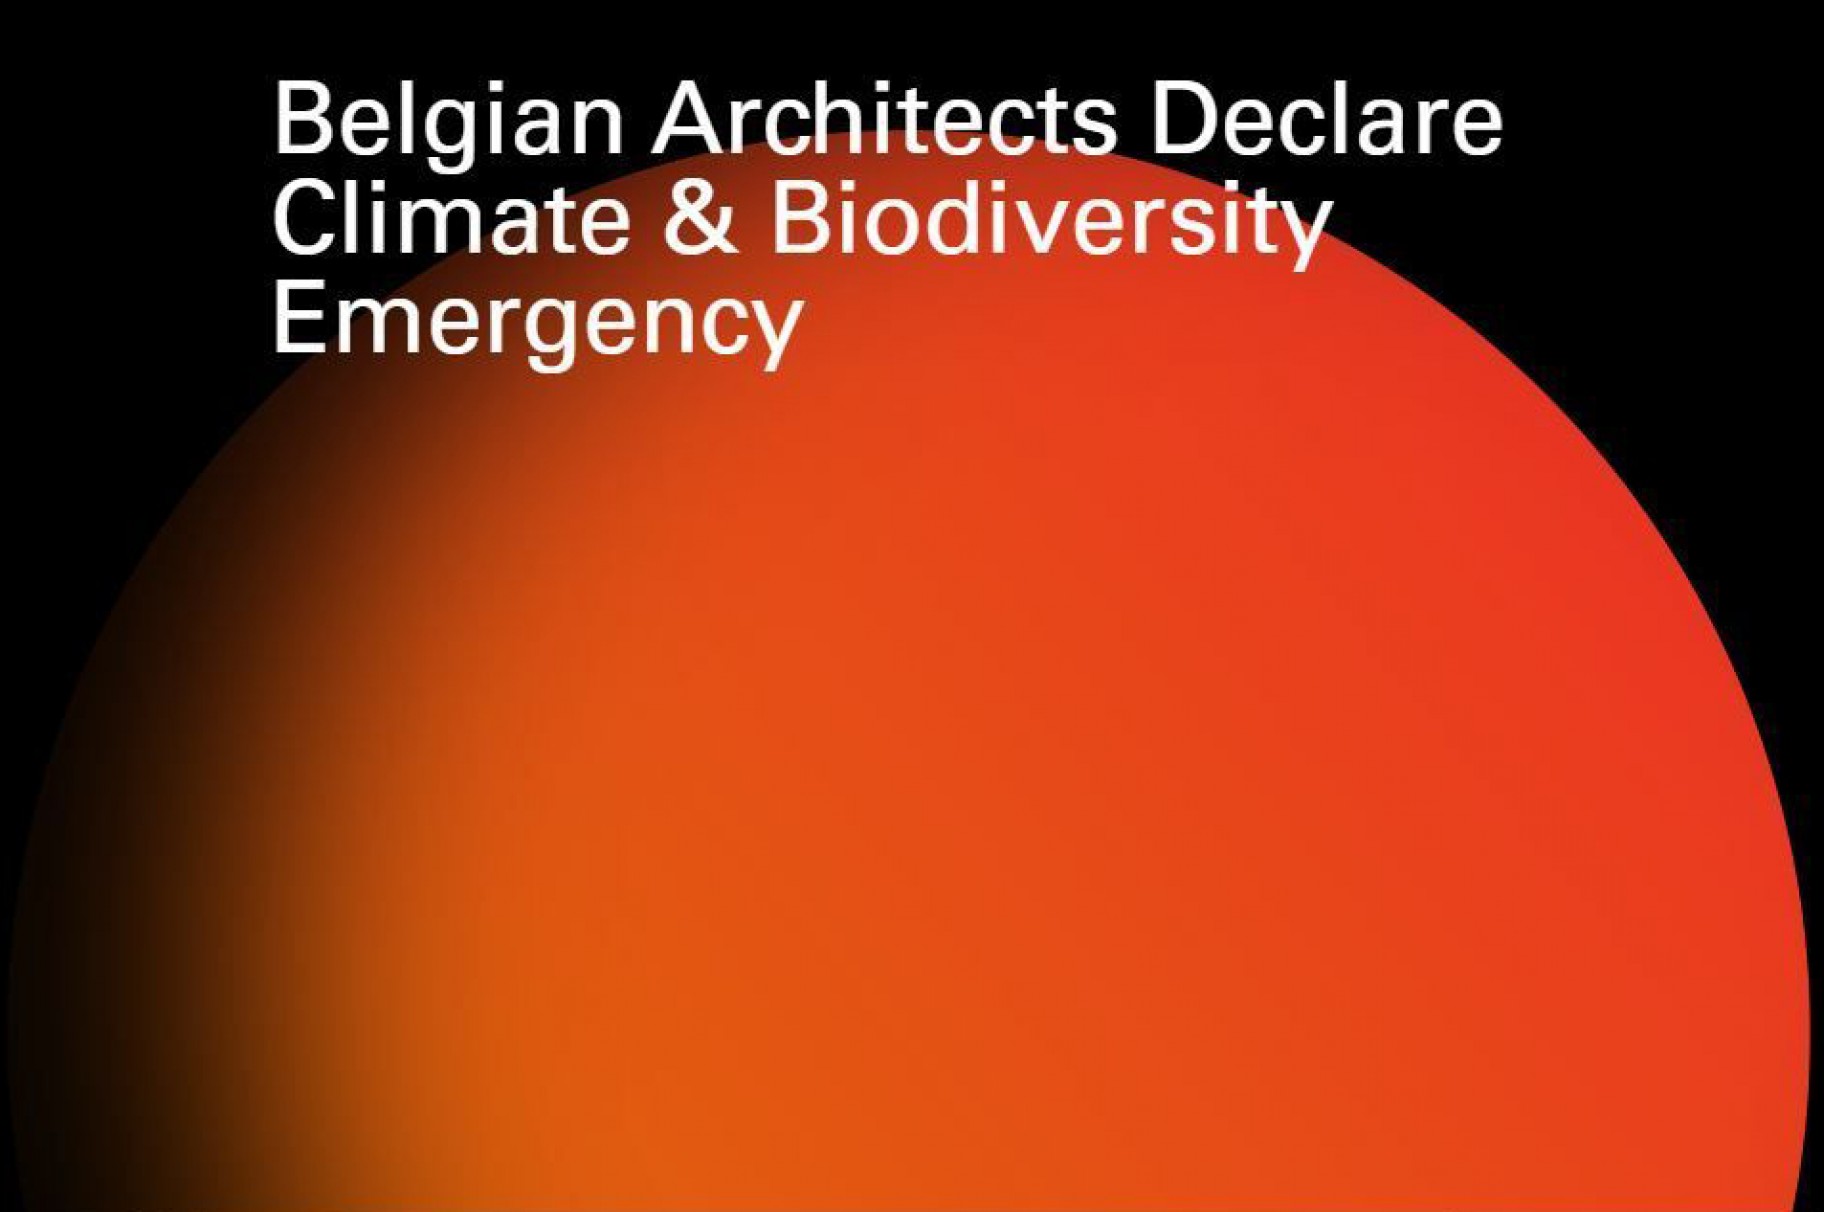 Als één van de founding fathers ondertekent META het initiatief 'Belgian Architects Declare Climate & Biodiversity Emergency'